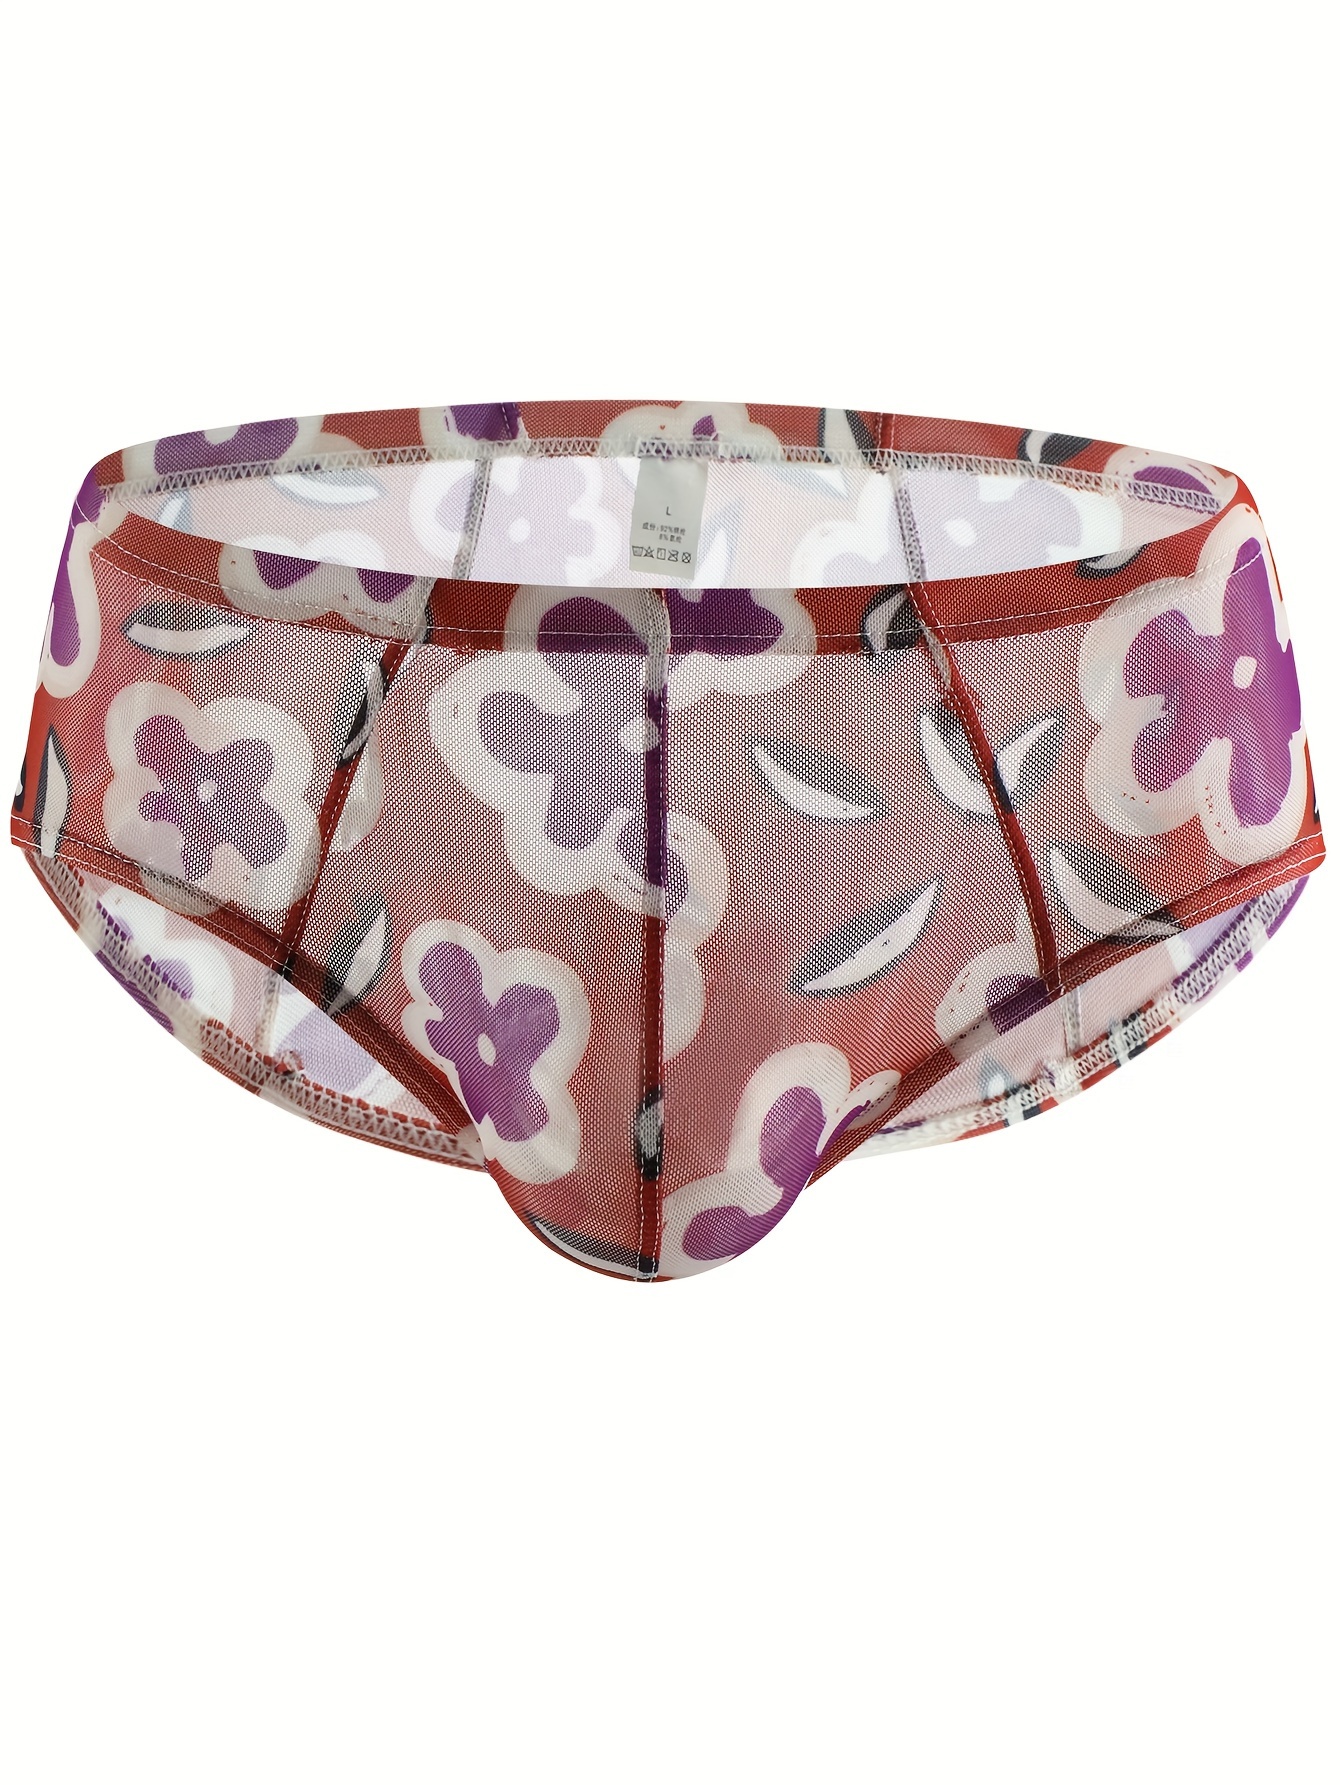 Personalized Underwear/Panties